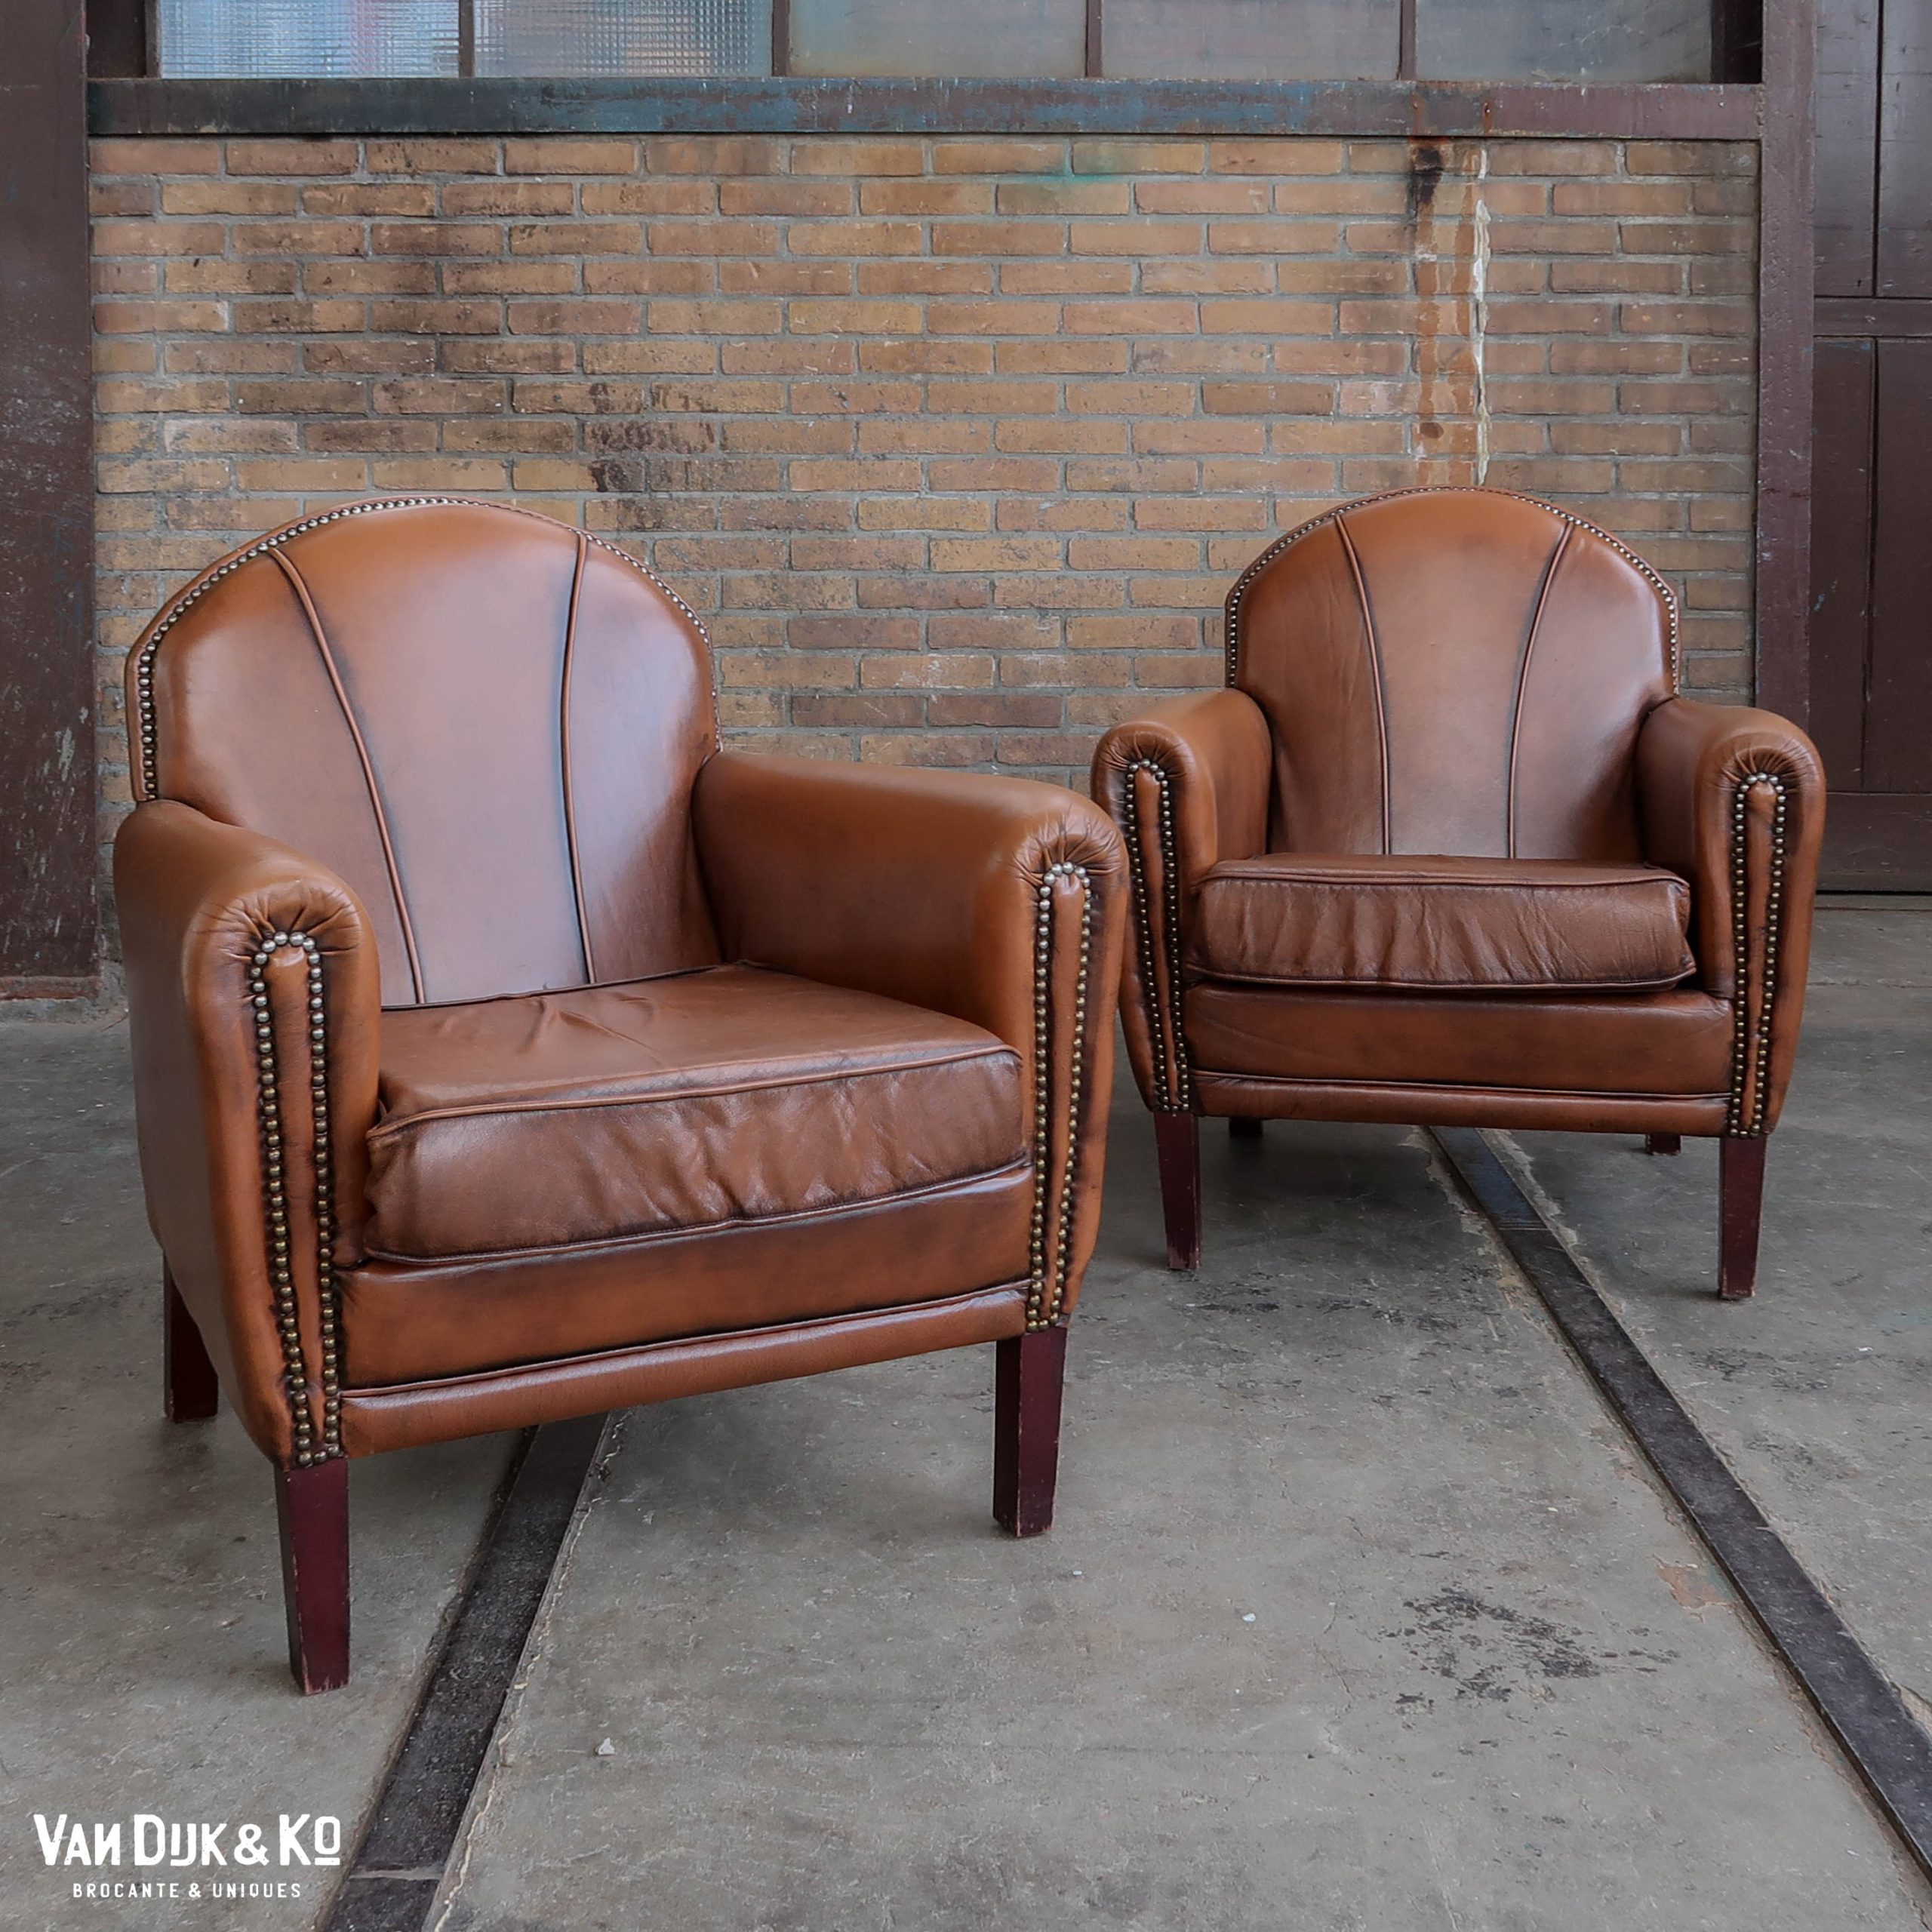 Corporation Schuur Het strand Leren vintage fauteuils » Van Dijk & Ko